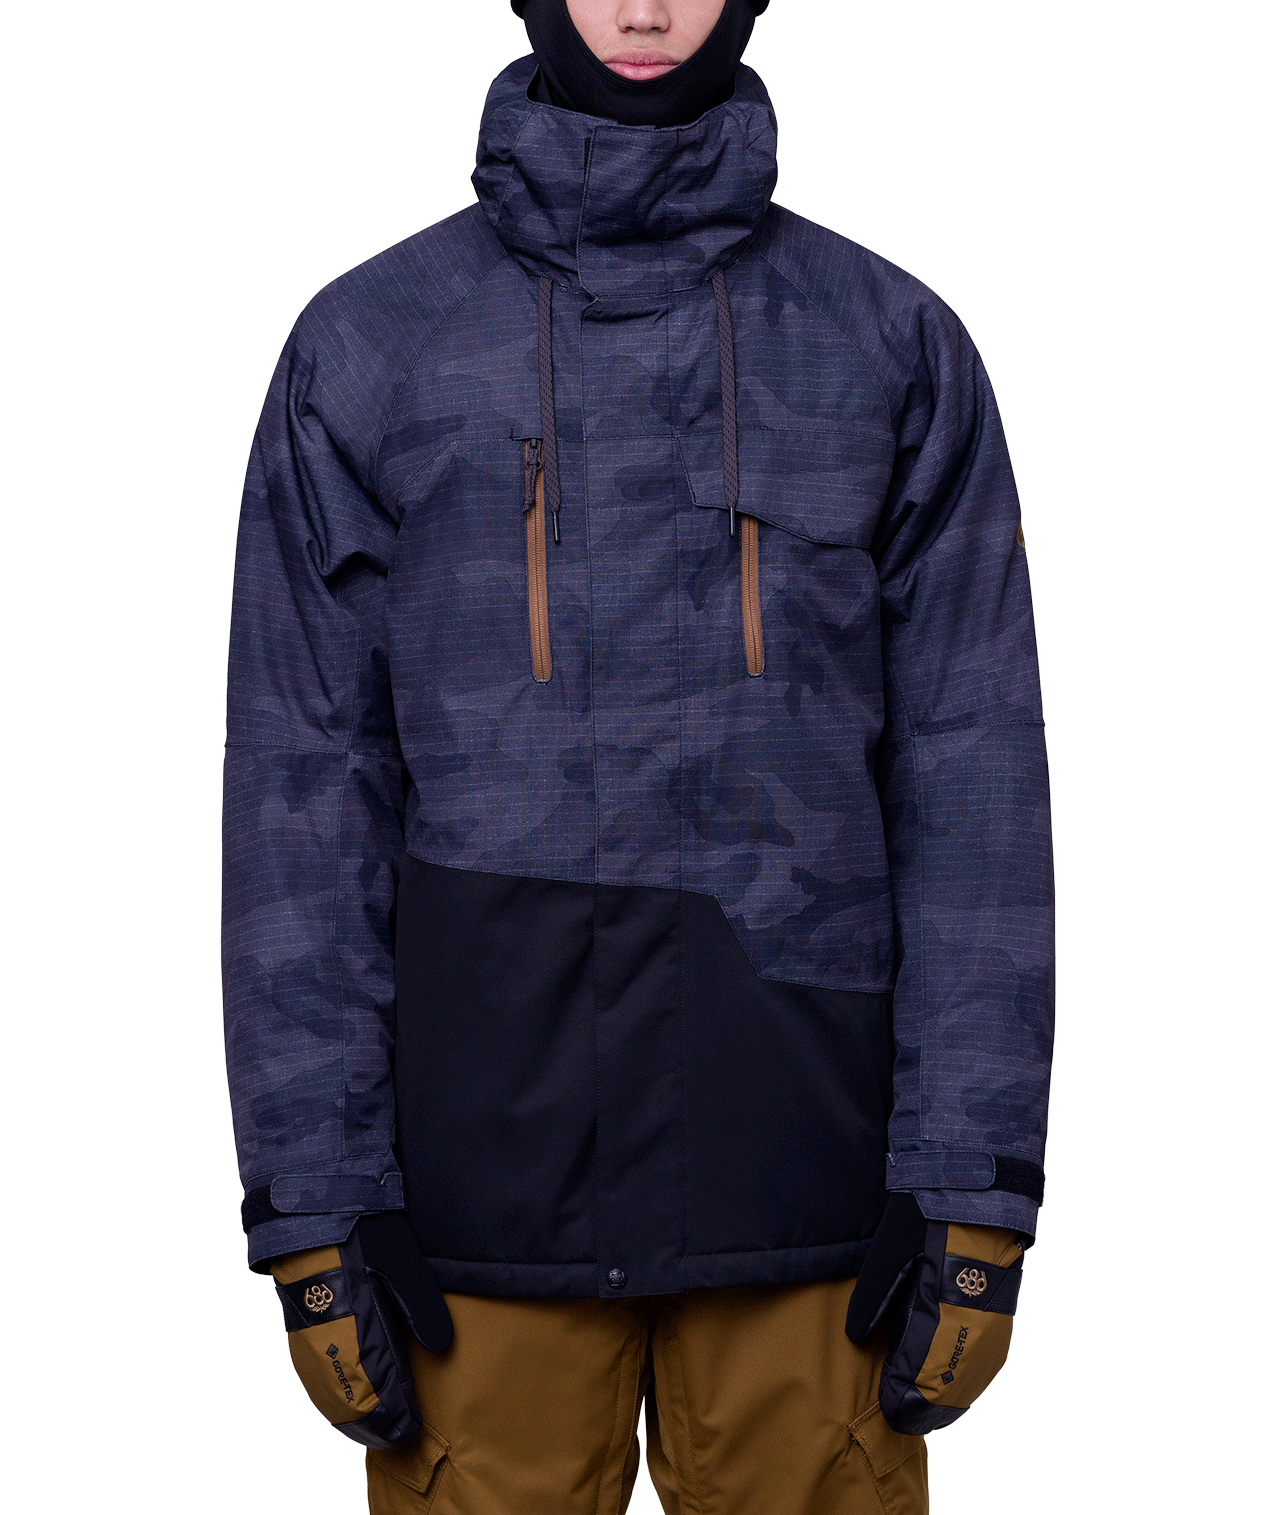 Veste de Ski Geo Insulated Jacket - Black Camo Colorblock